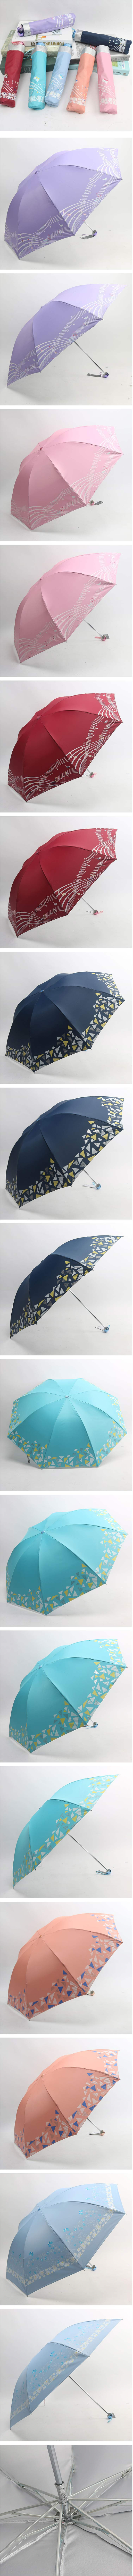 【919活动专享】仅售21.8元包邮！天堂伞17336T银丝印晴雨伞 男女便携式太阳伞折叠雨伞